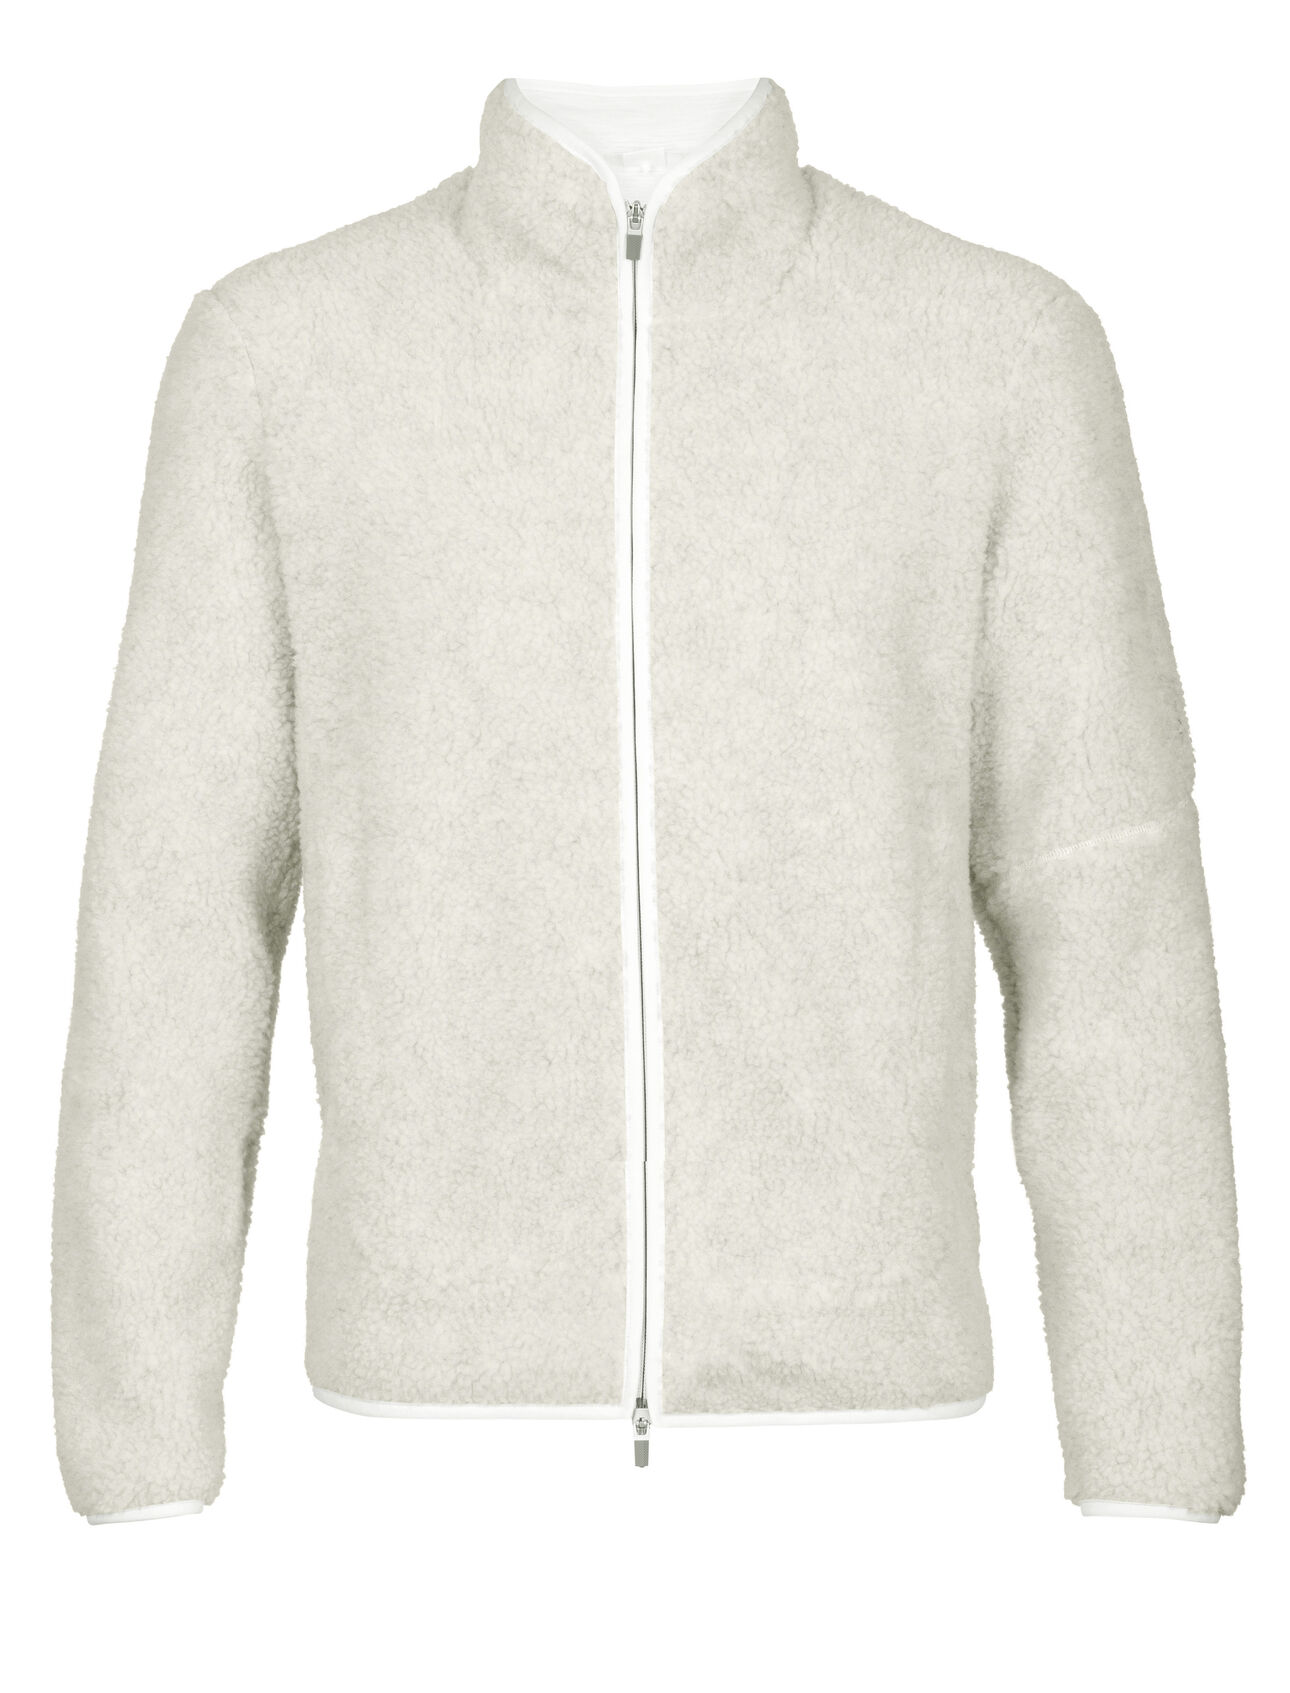 Men's RealFleece™ Merino High Pile Long Sleeve Zip Jacket